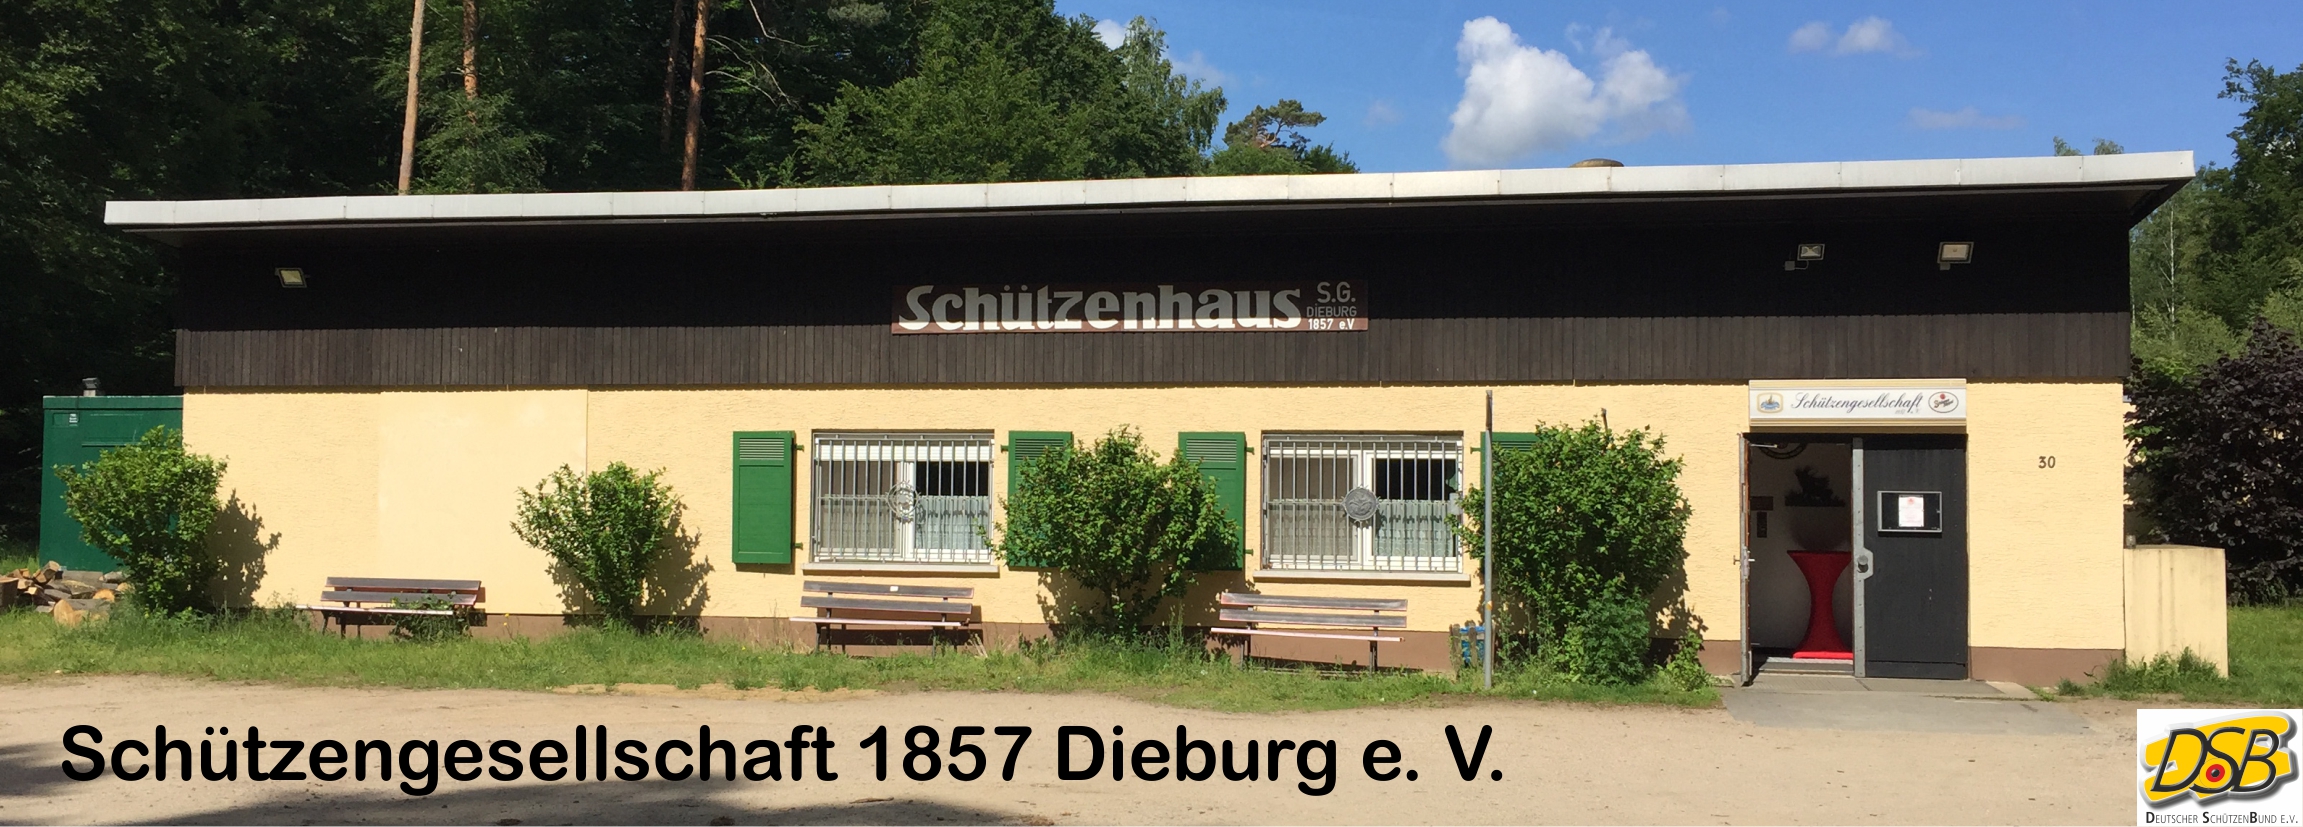 Schützengesellschaft 1857 Dieburg